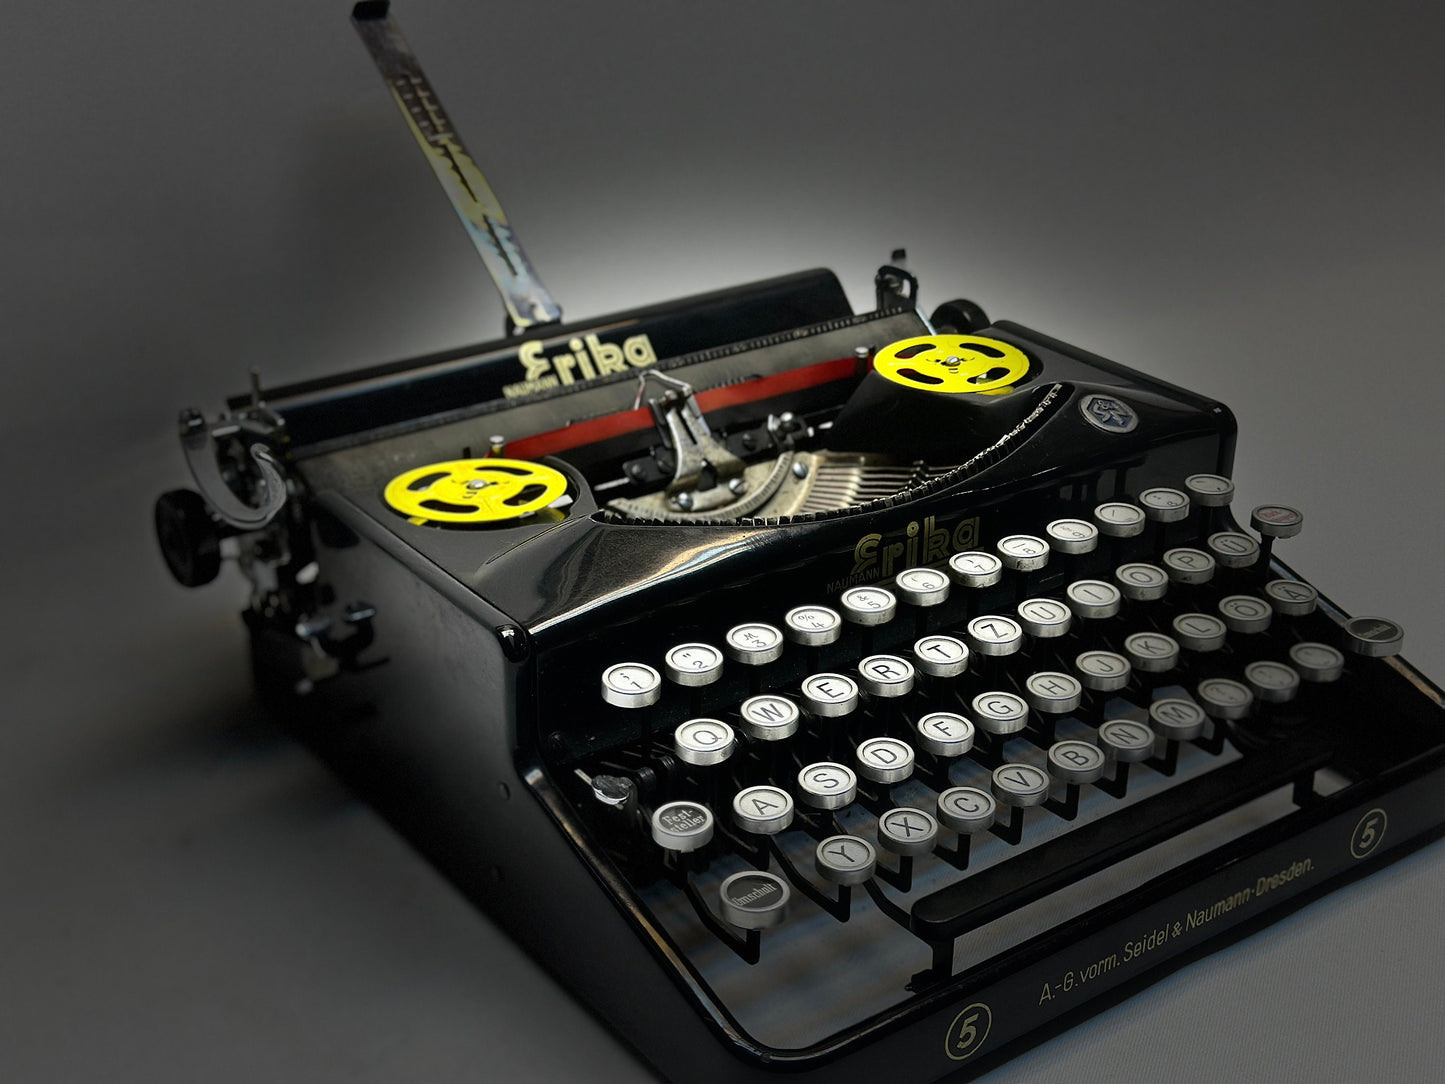 Erika Black Typewriter with Wooden Case - 1940 Model, Best Gift, Premium Quality, Antique Typewriter, Old World Elegance,Europe Typewriter